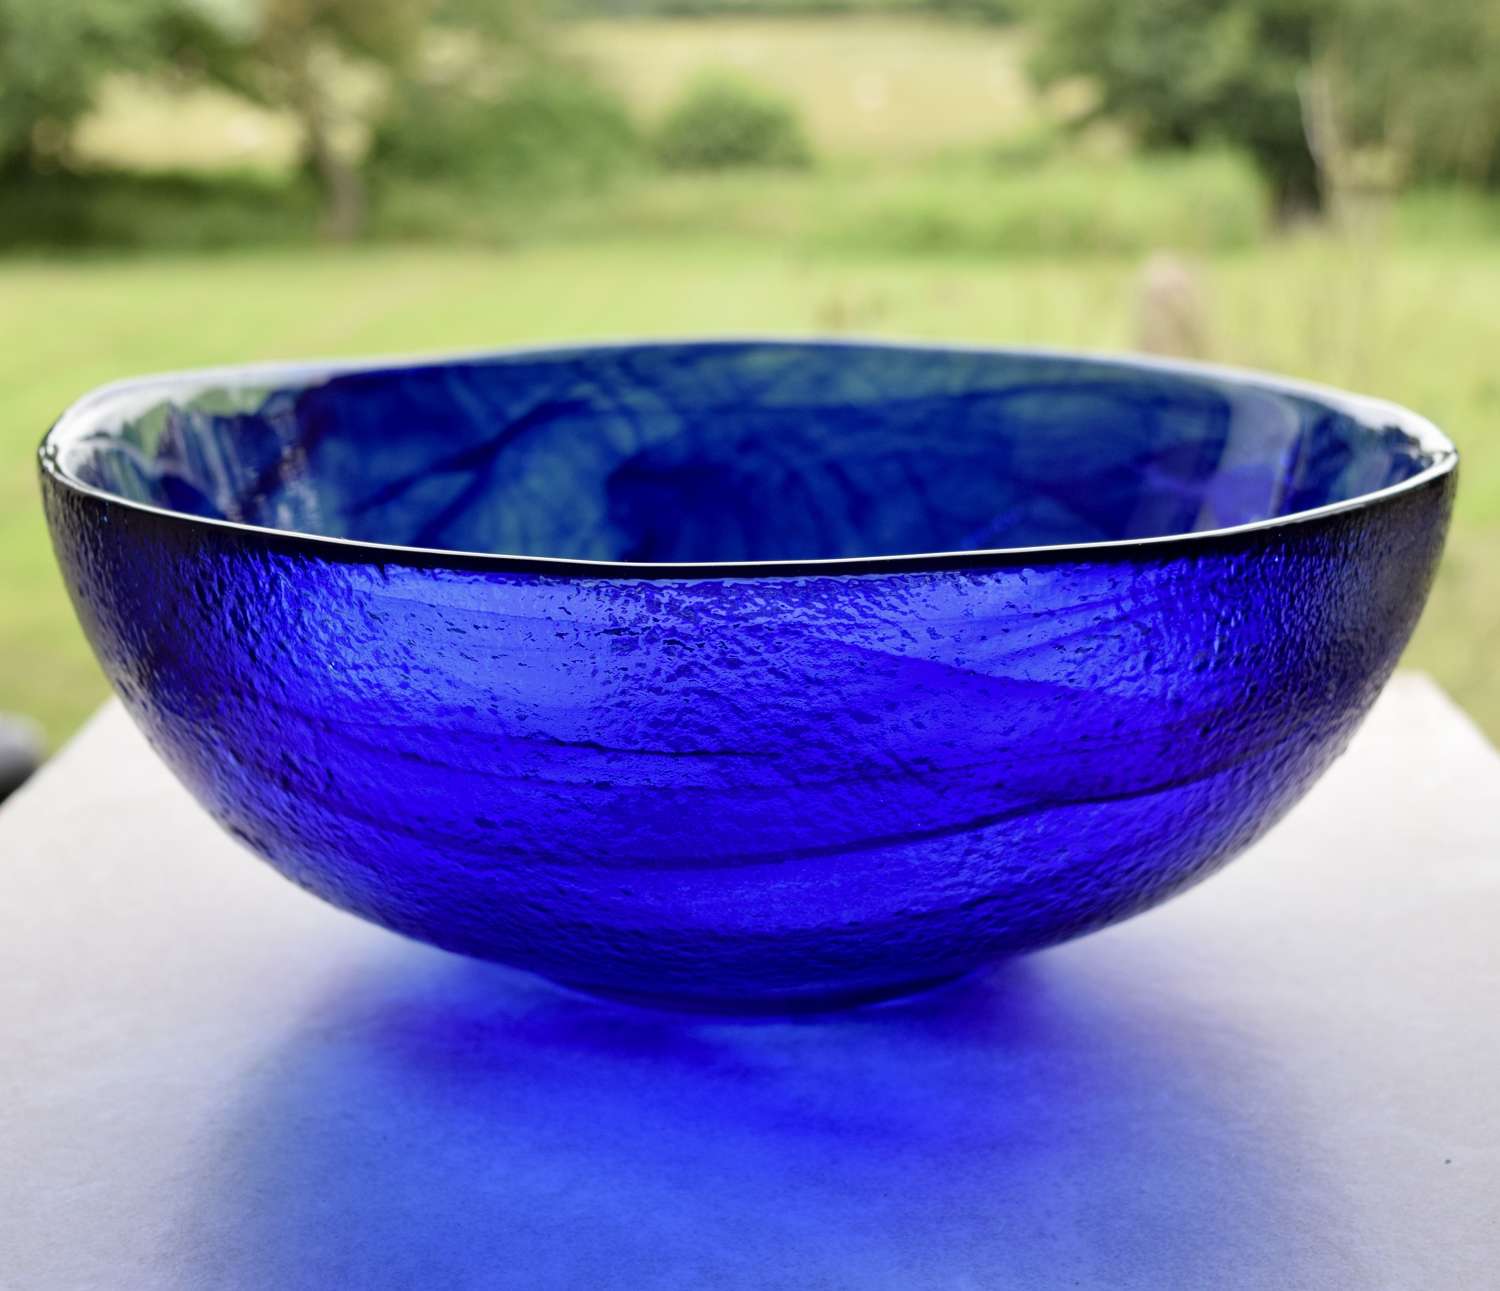 Kosta Boda Blue Bowl by Anna Ehrner